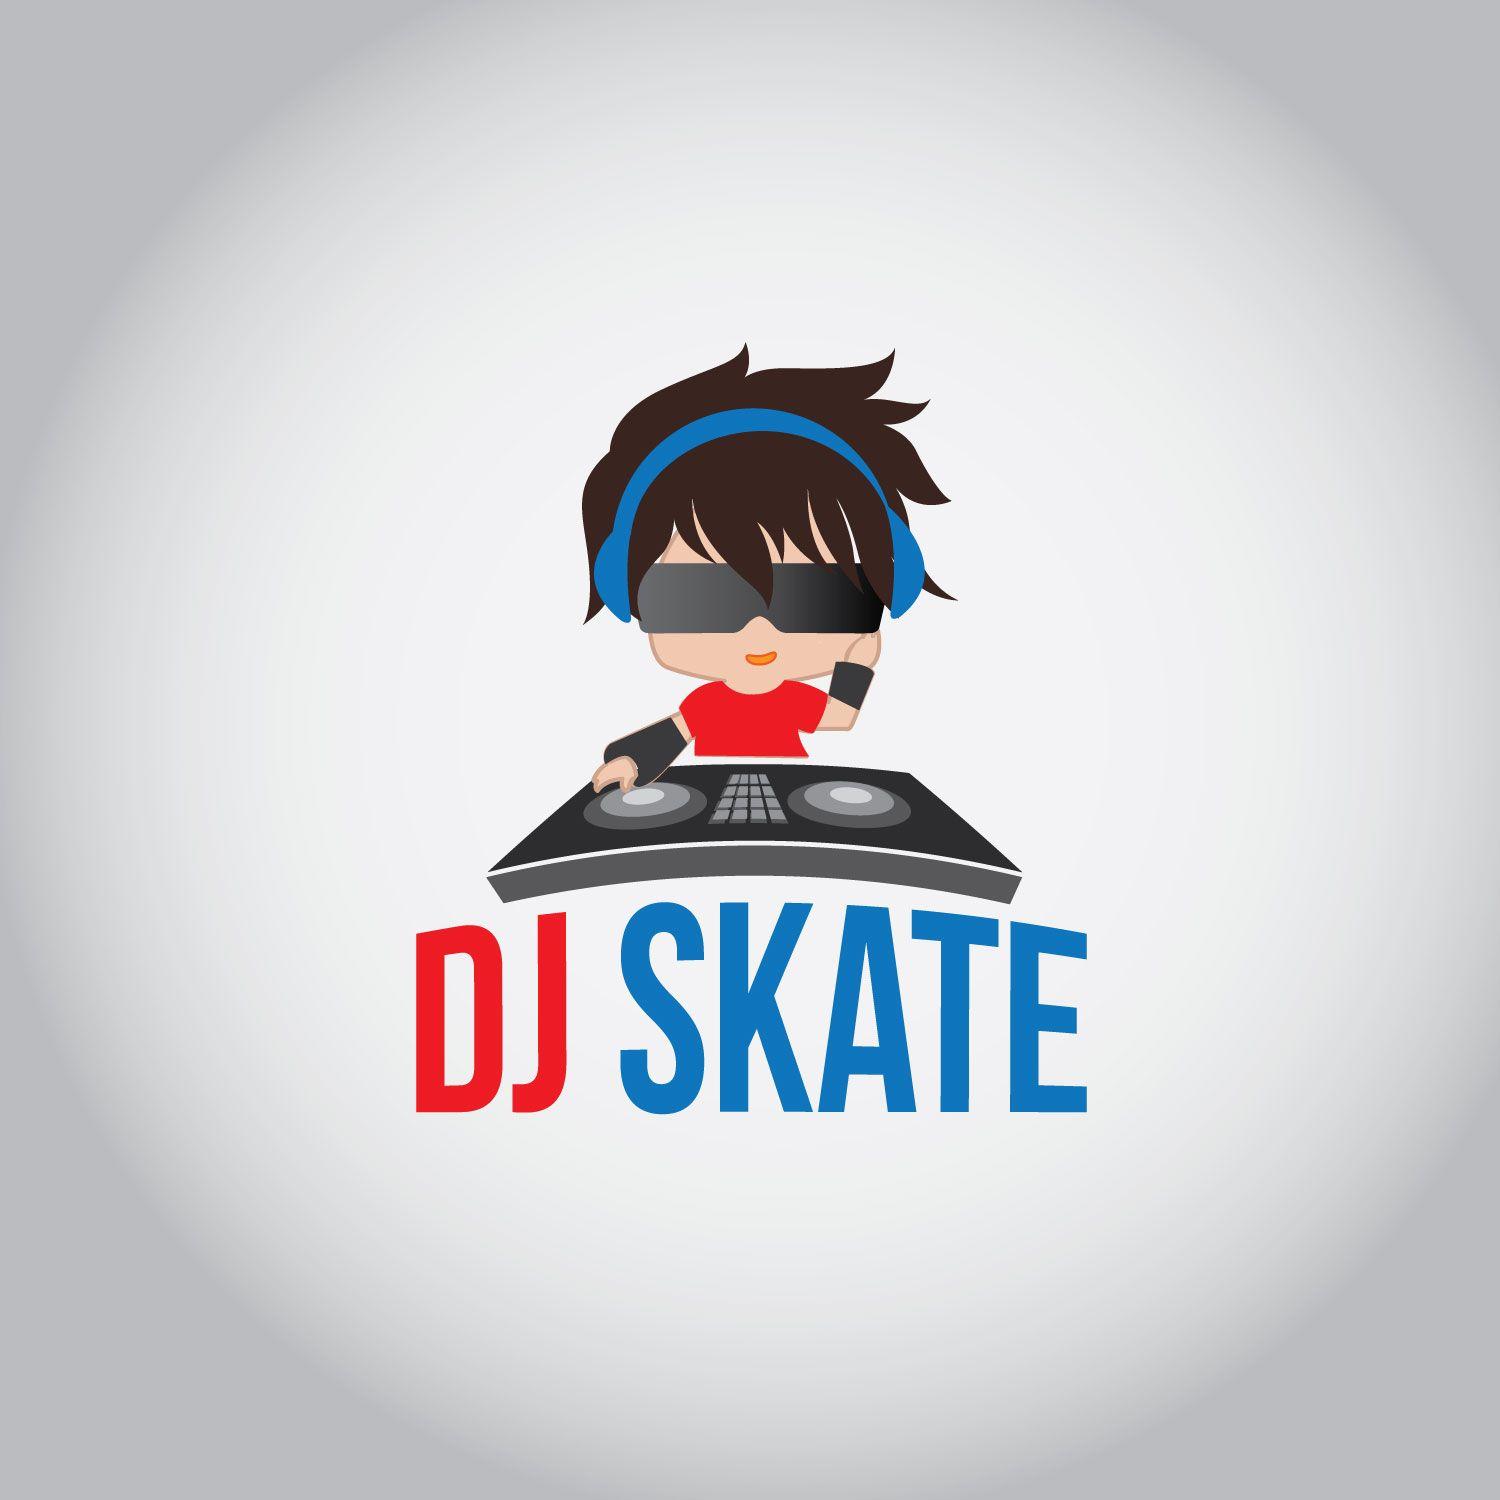 Conservative Logo - Modern, Conservative Logo Design for DJ Skate by concepts. Design